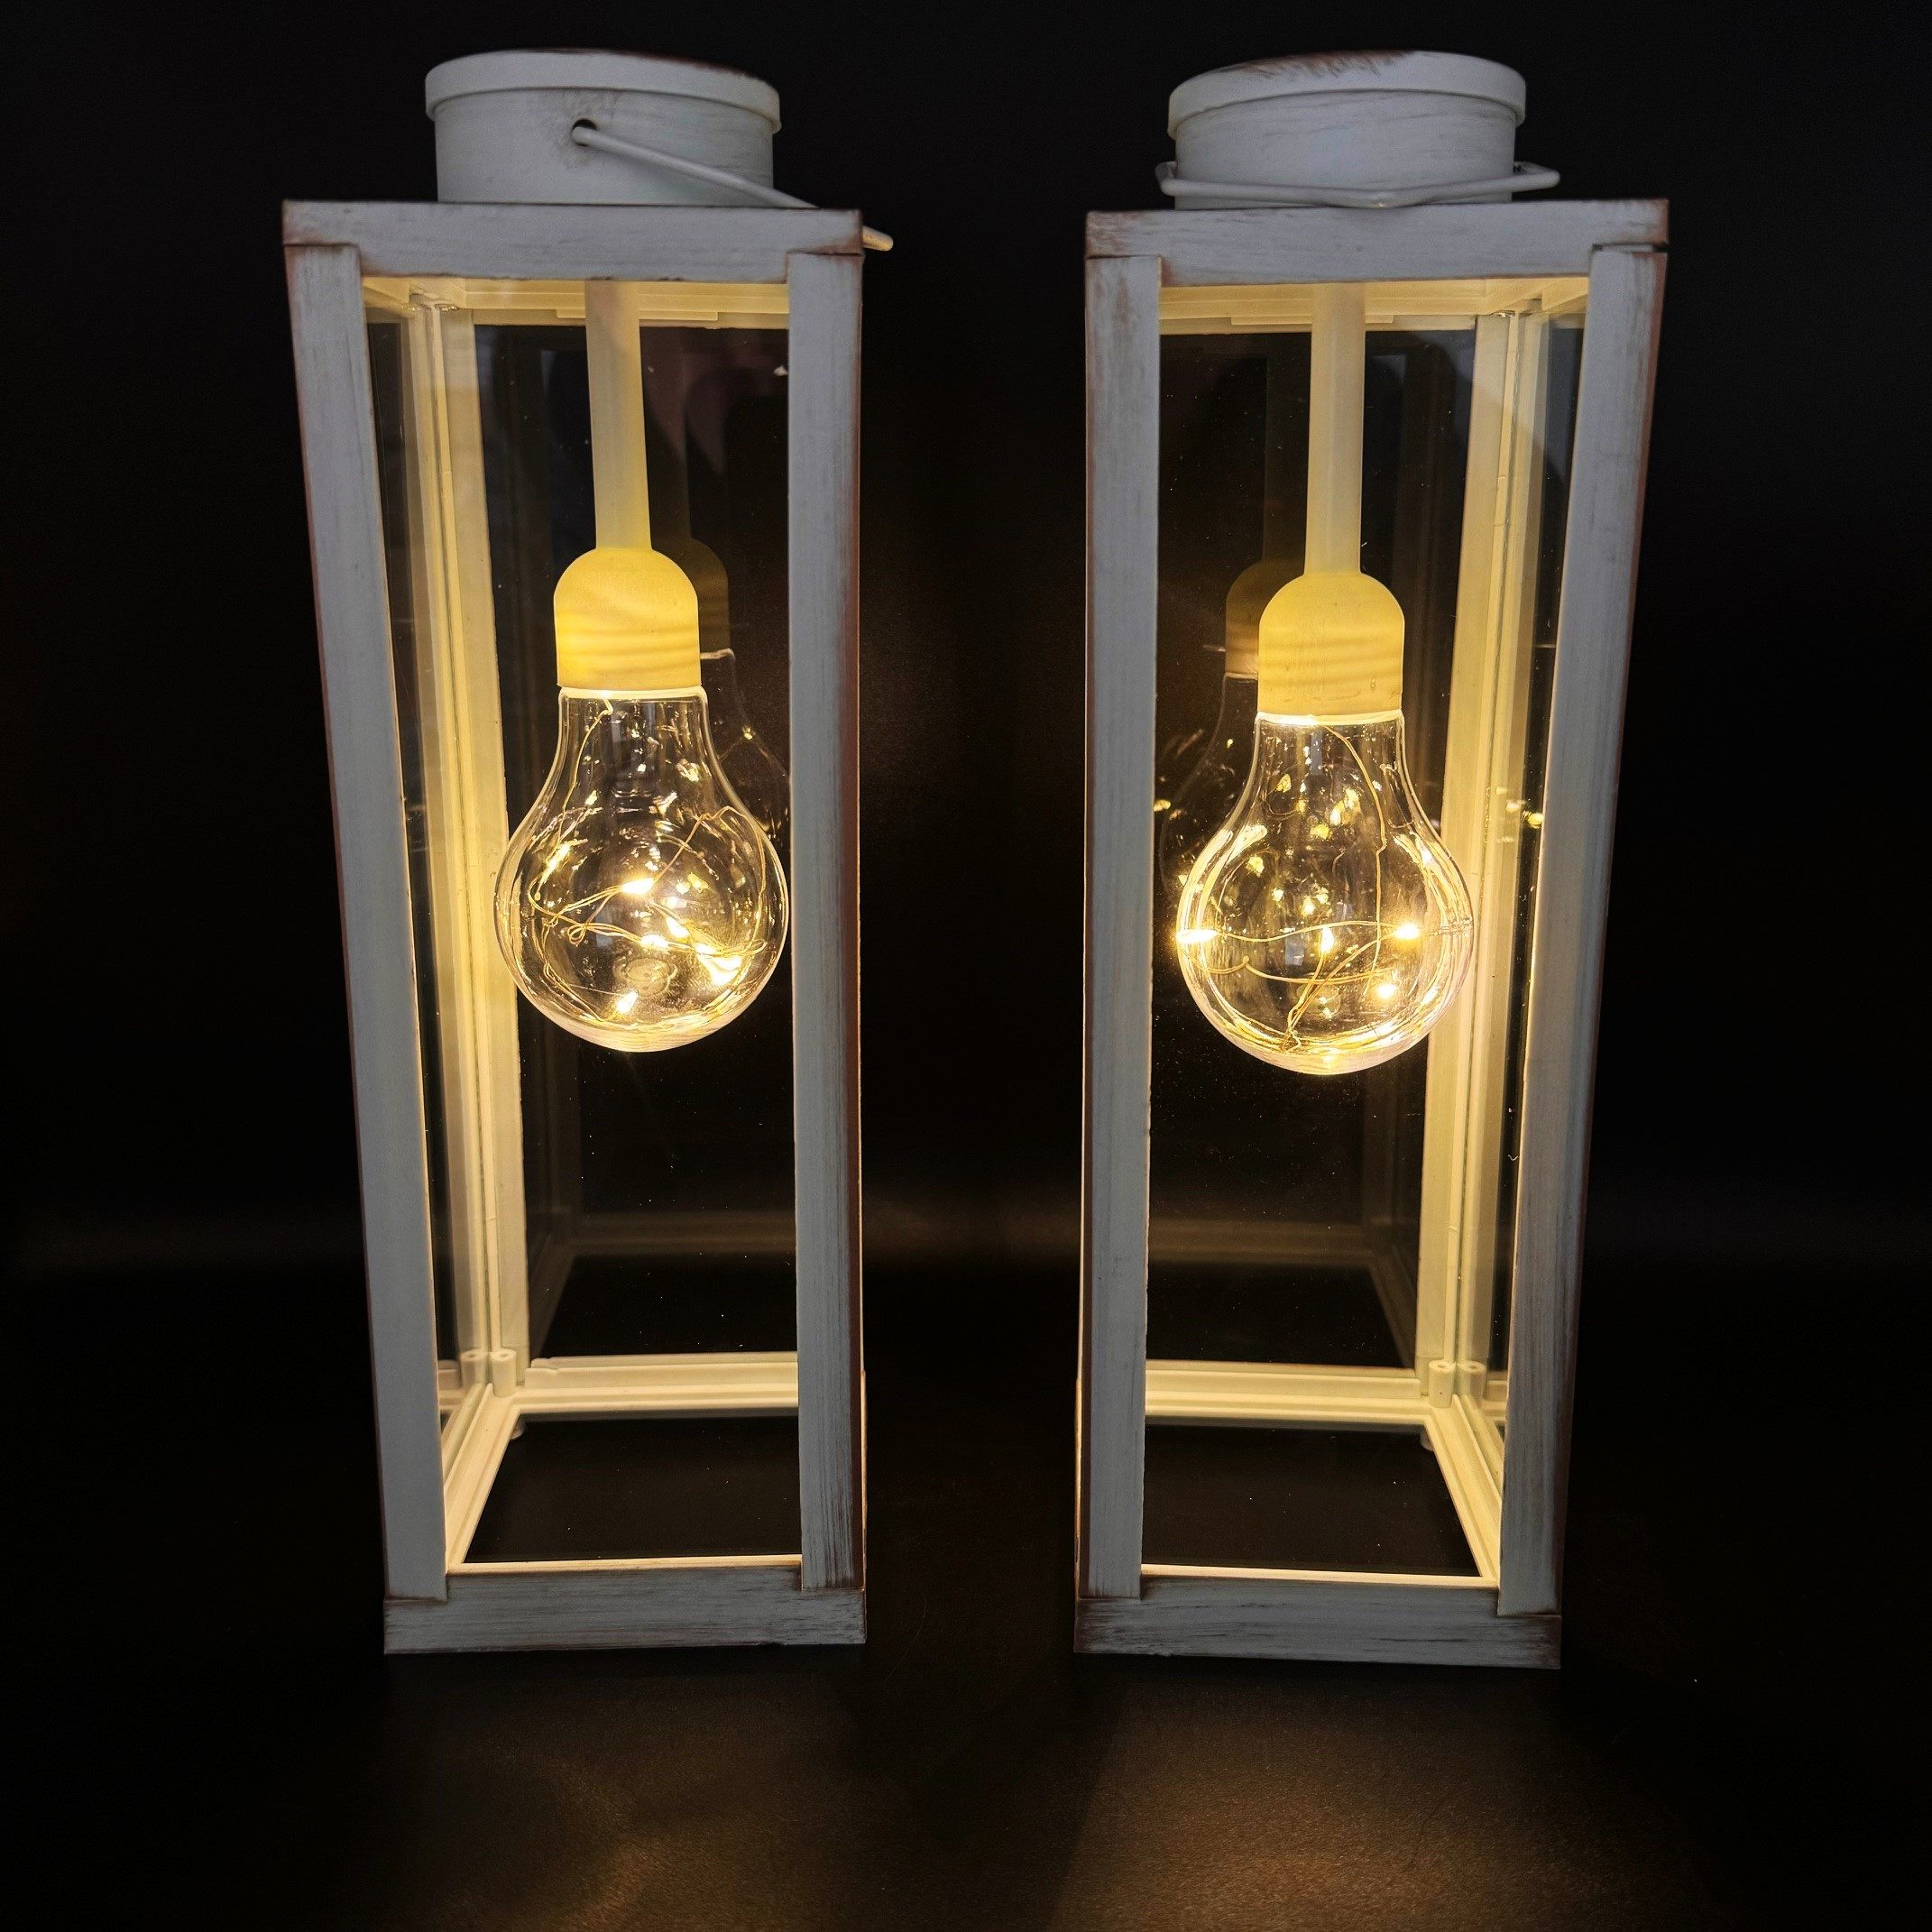 Online-Fuchs LED Laterne 2 Ліхтарі Set im Vintage Look - Outdoor geeignet, Glühbirne mit LED-Lichterkette und Timer, Warmweiß, Weiß oder Schwarz - 30 cm groß